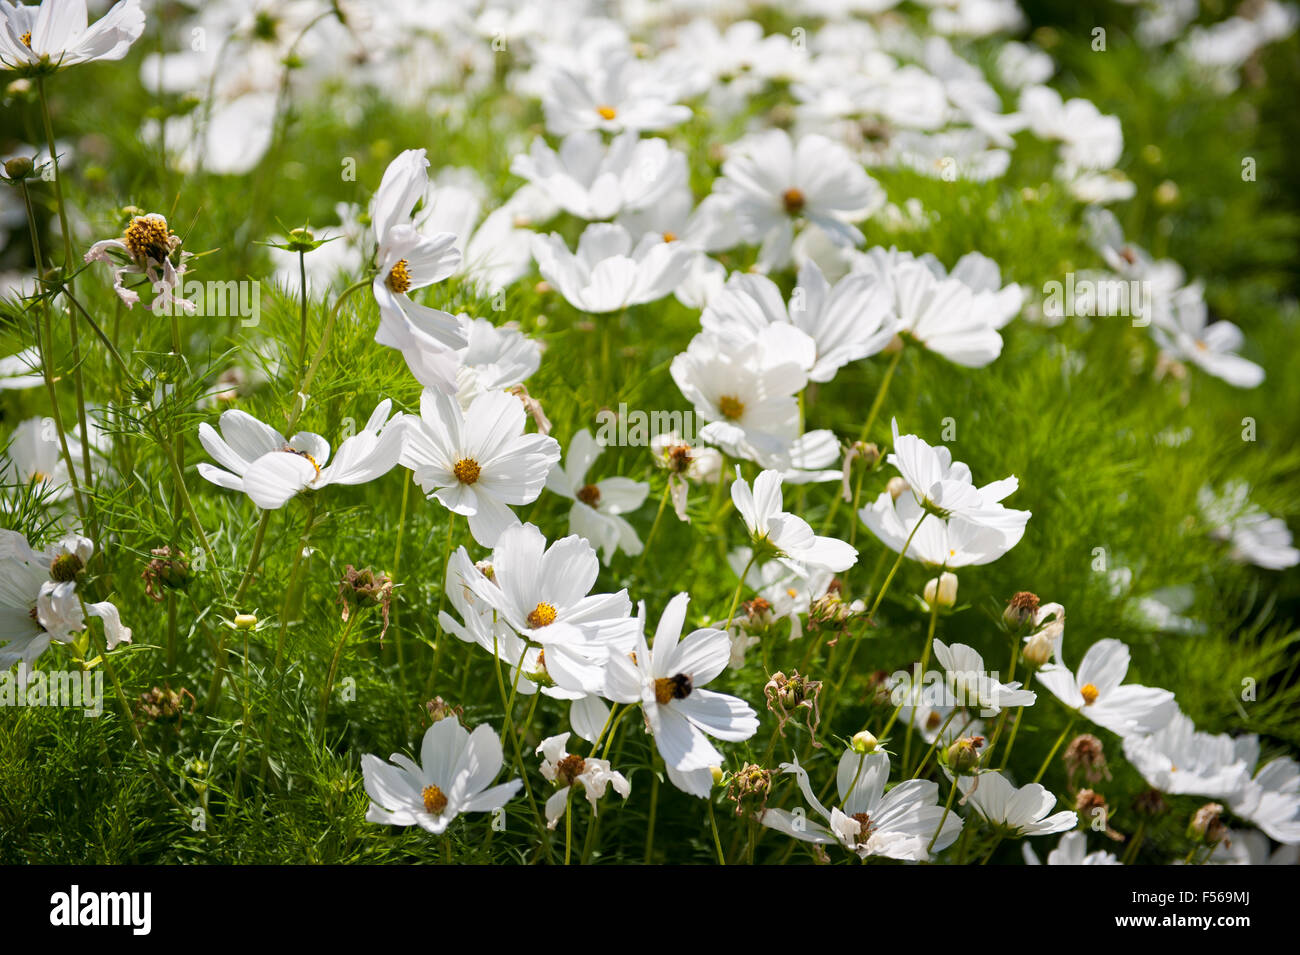 Cosmos Bipinnatus blanc qui fleurit en juillet, appelé Jardin des plantes  ou du cosmos, de l'Aster les plantes de jardin ornemental Cosmea blanc  Photo Stock - Alamy